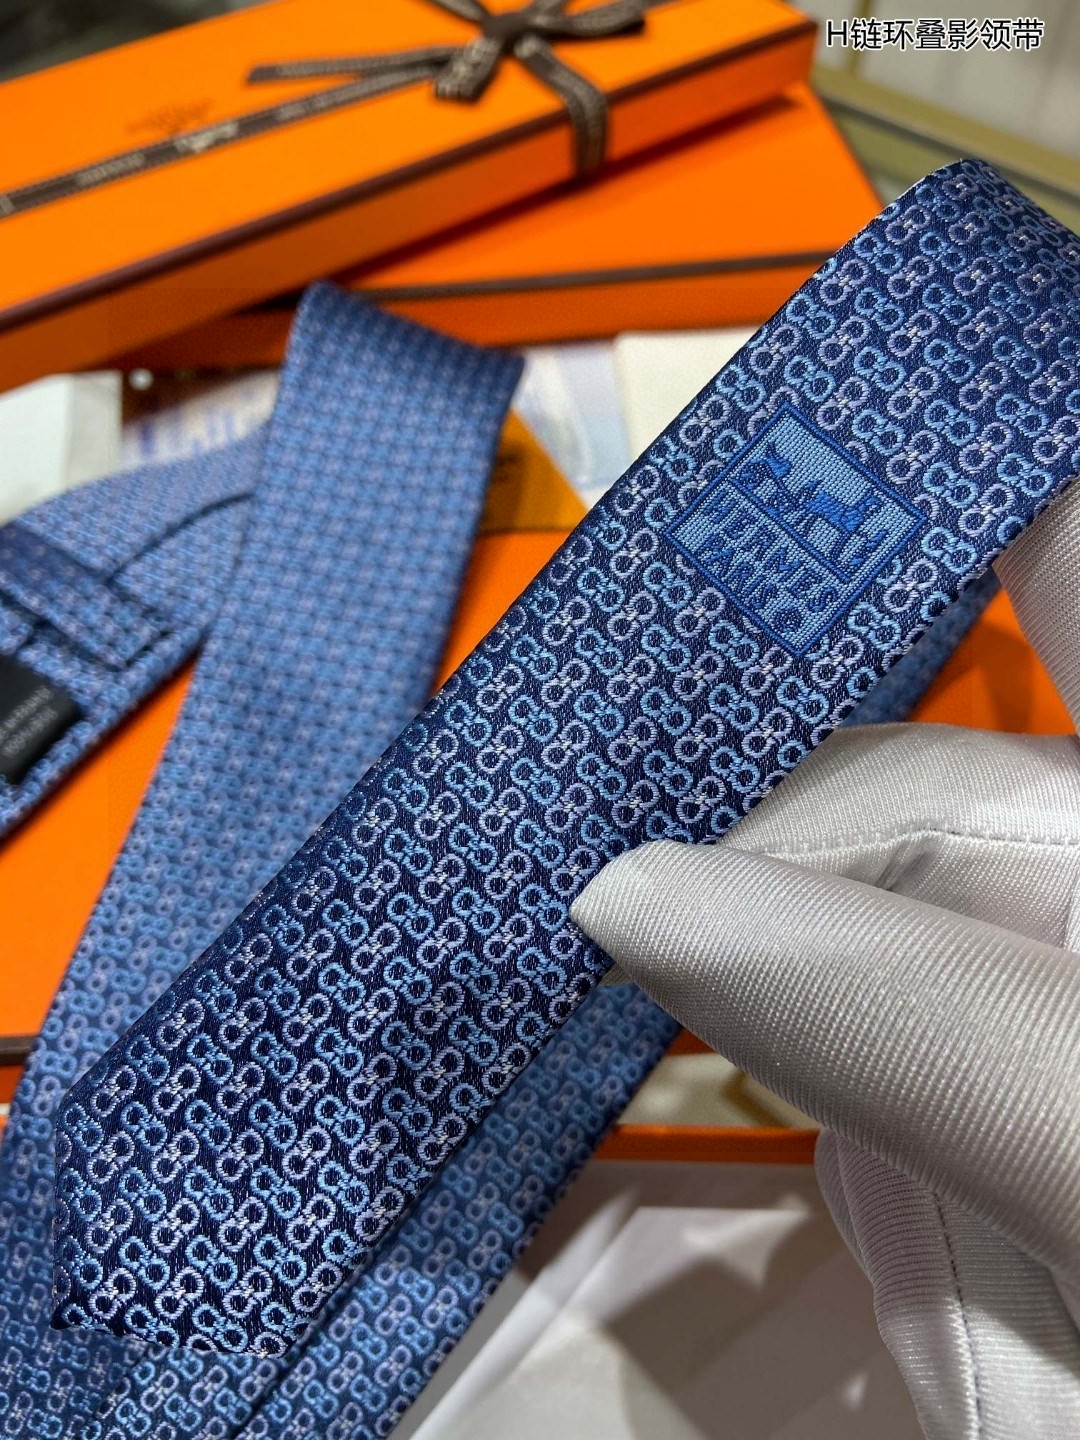 男士新款领带系列H连环叠影领带稀有H家每年都有一千条不同印花的领带面世从最初的多以几何图案表现骑术活动为